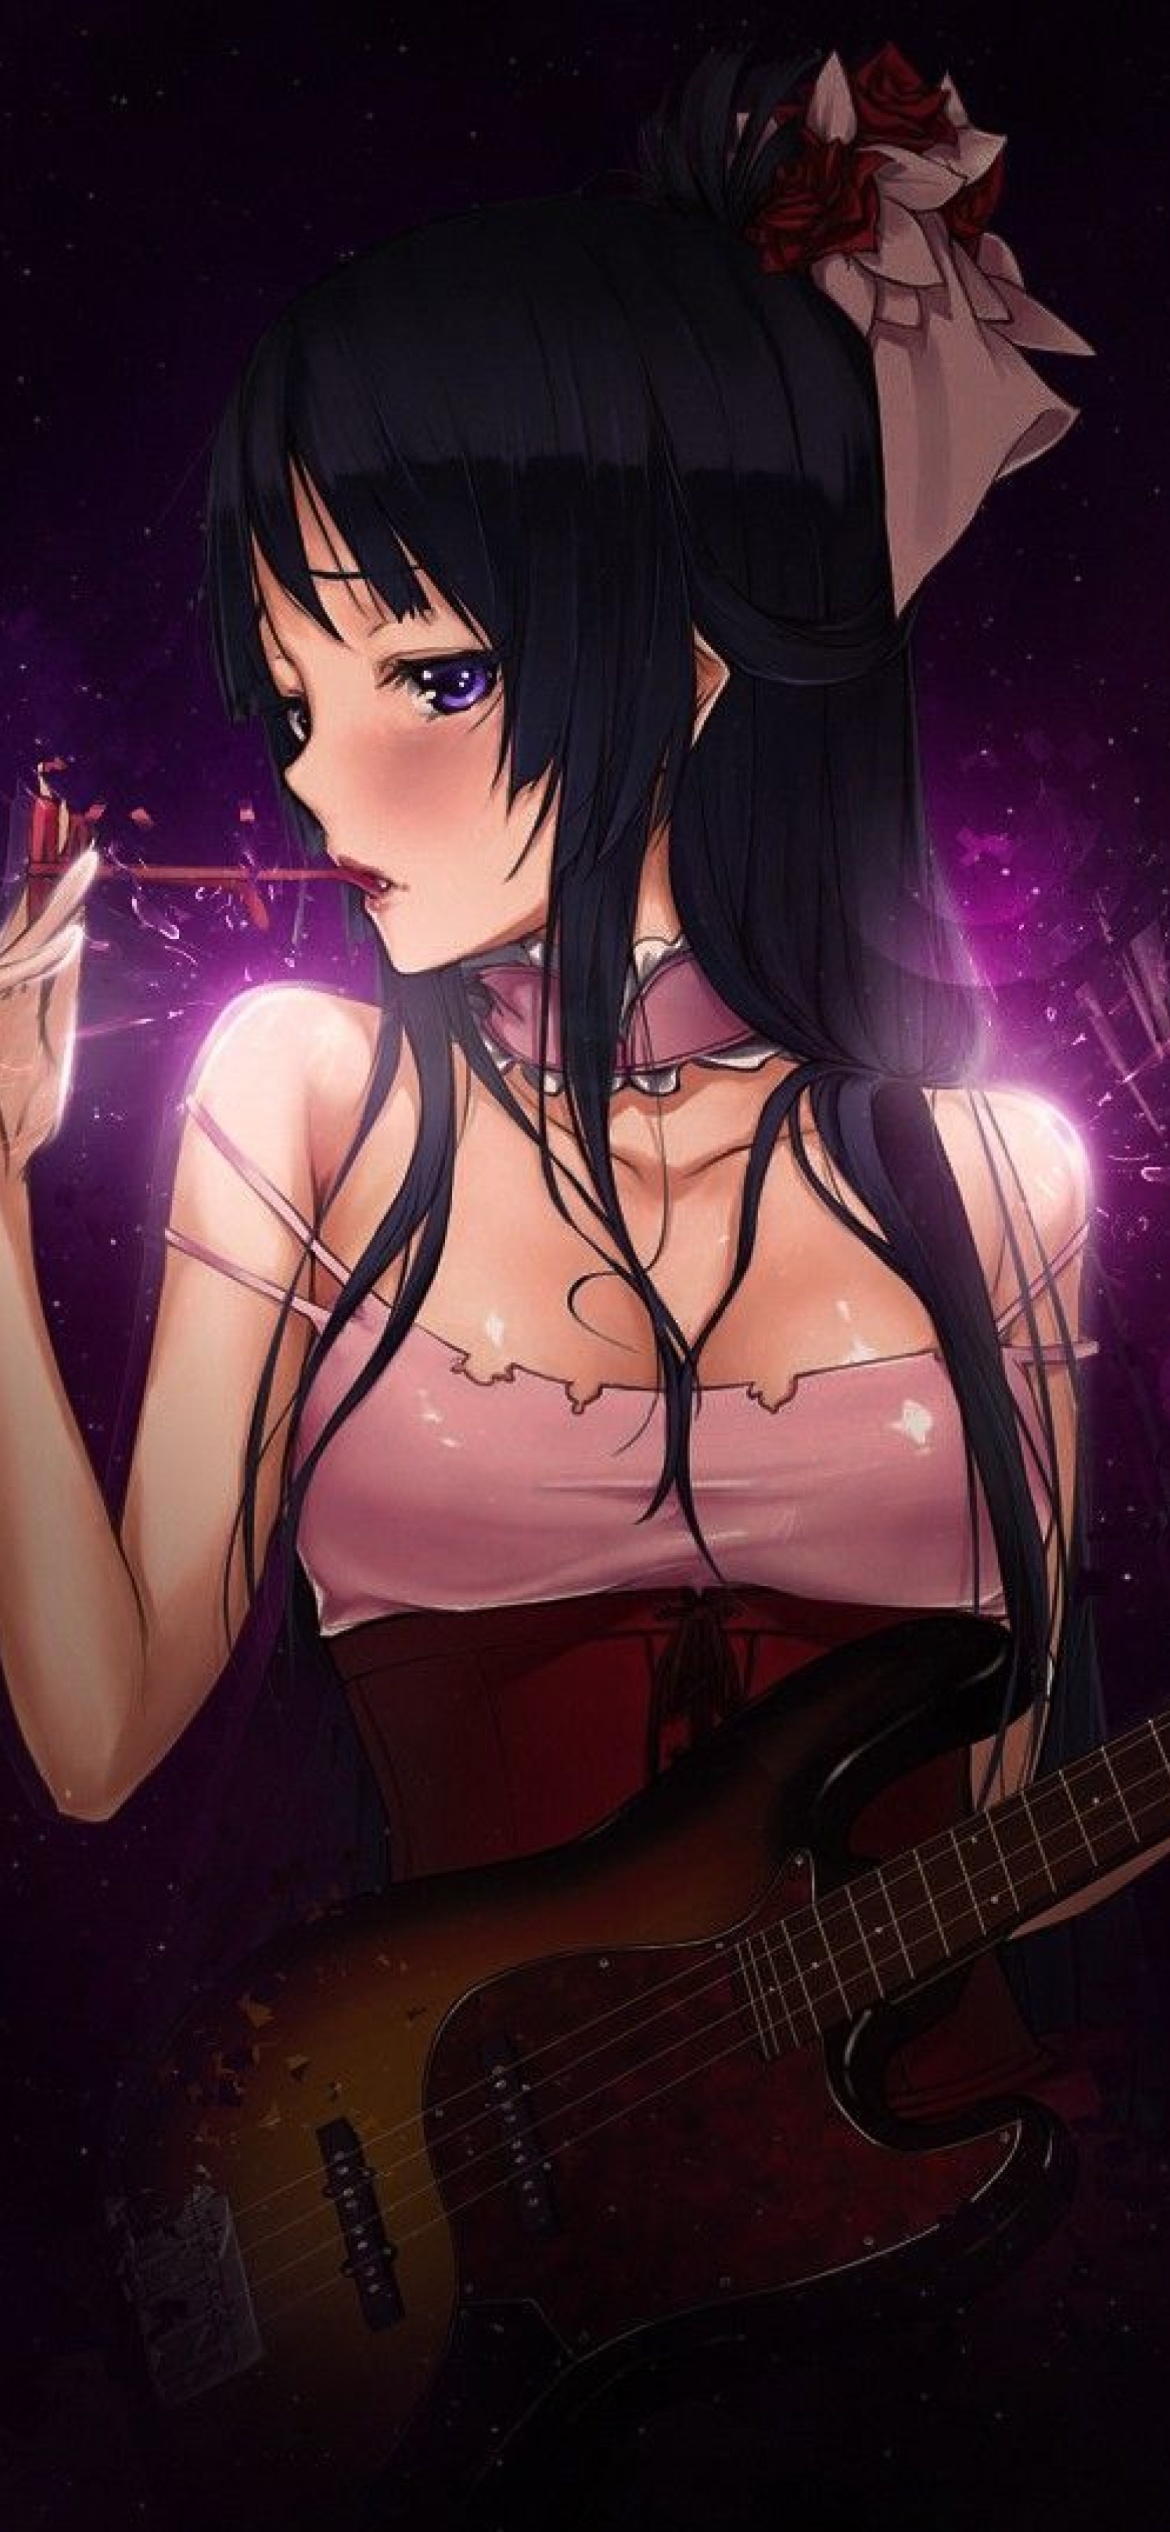 Das Anime Girl with Guitar Wallpaper 1170x2532